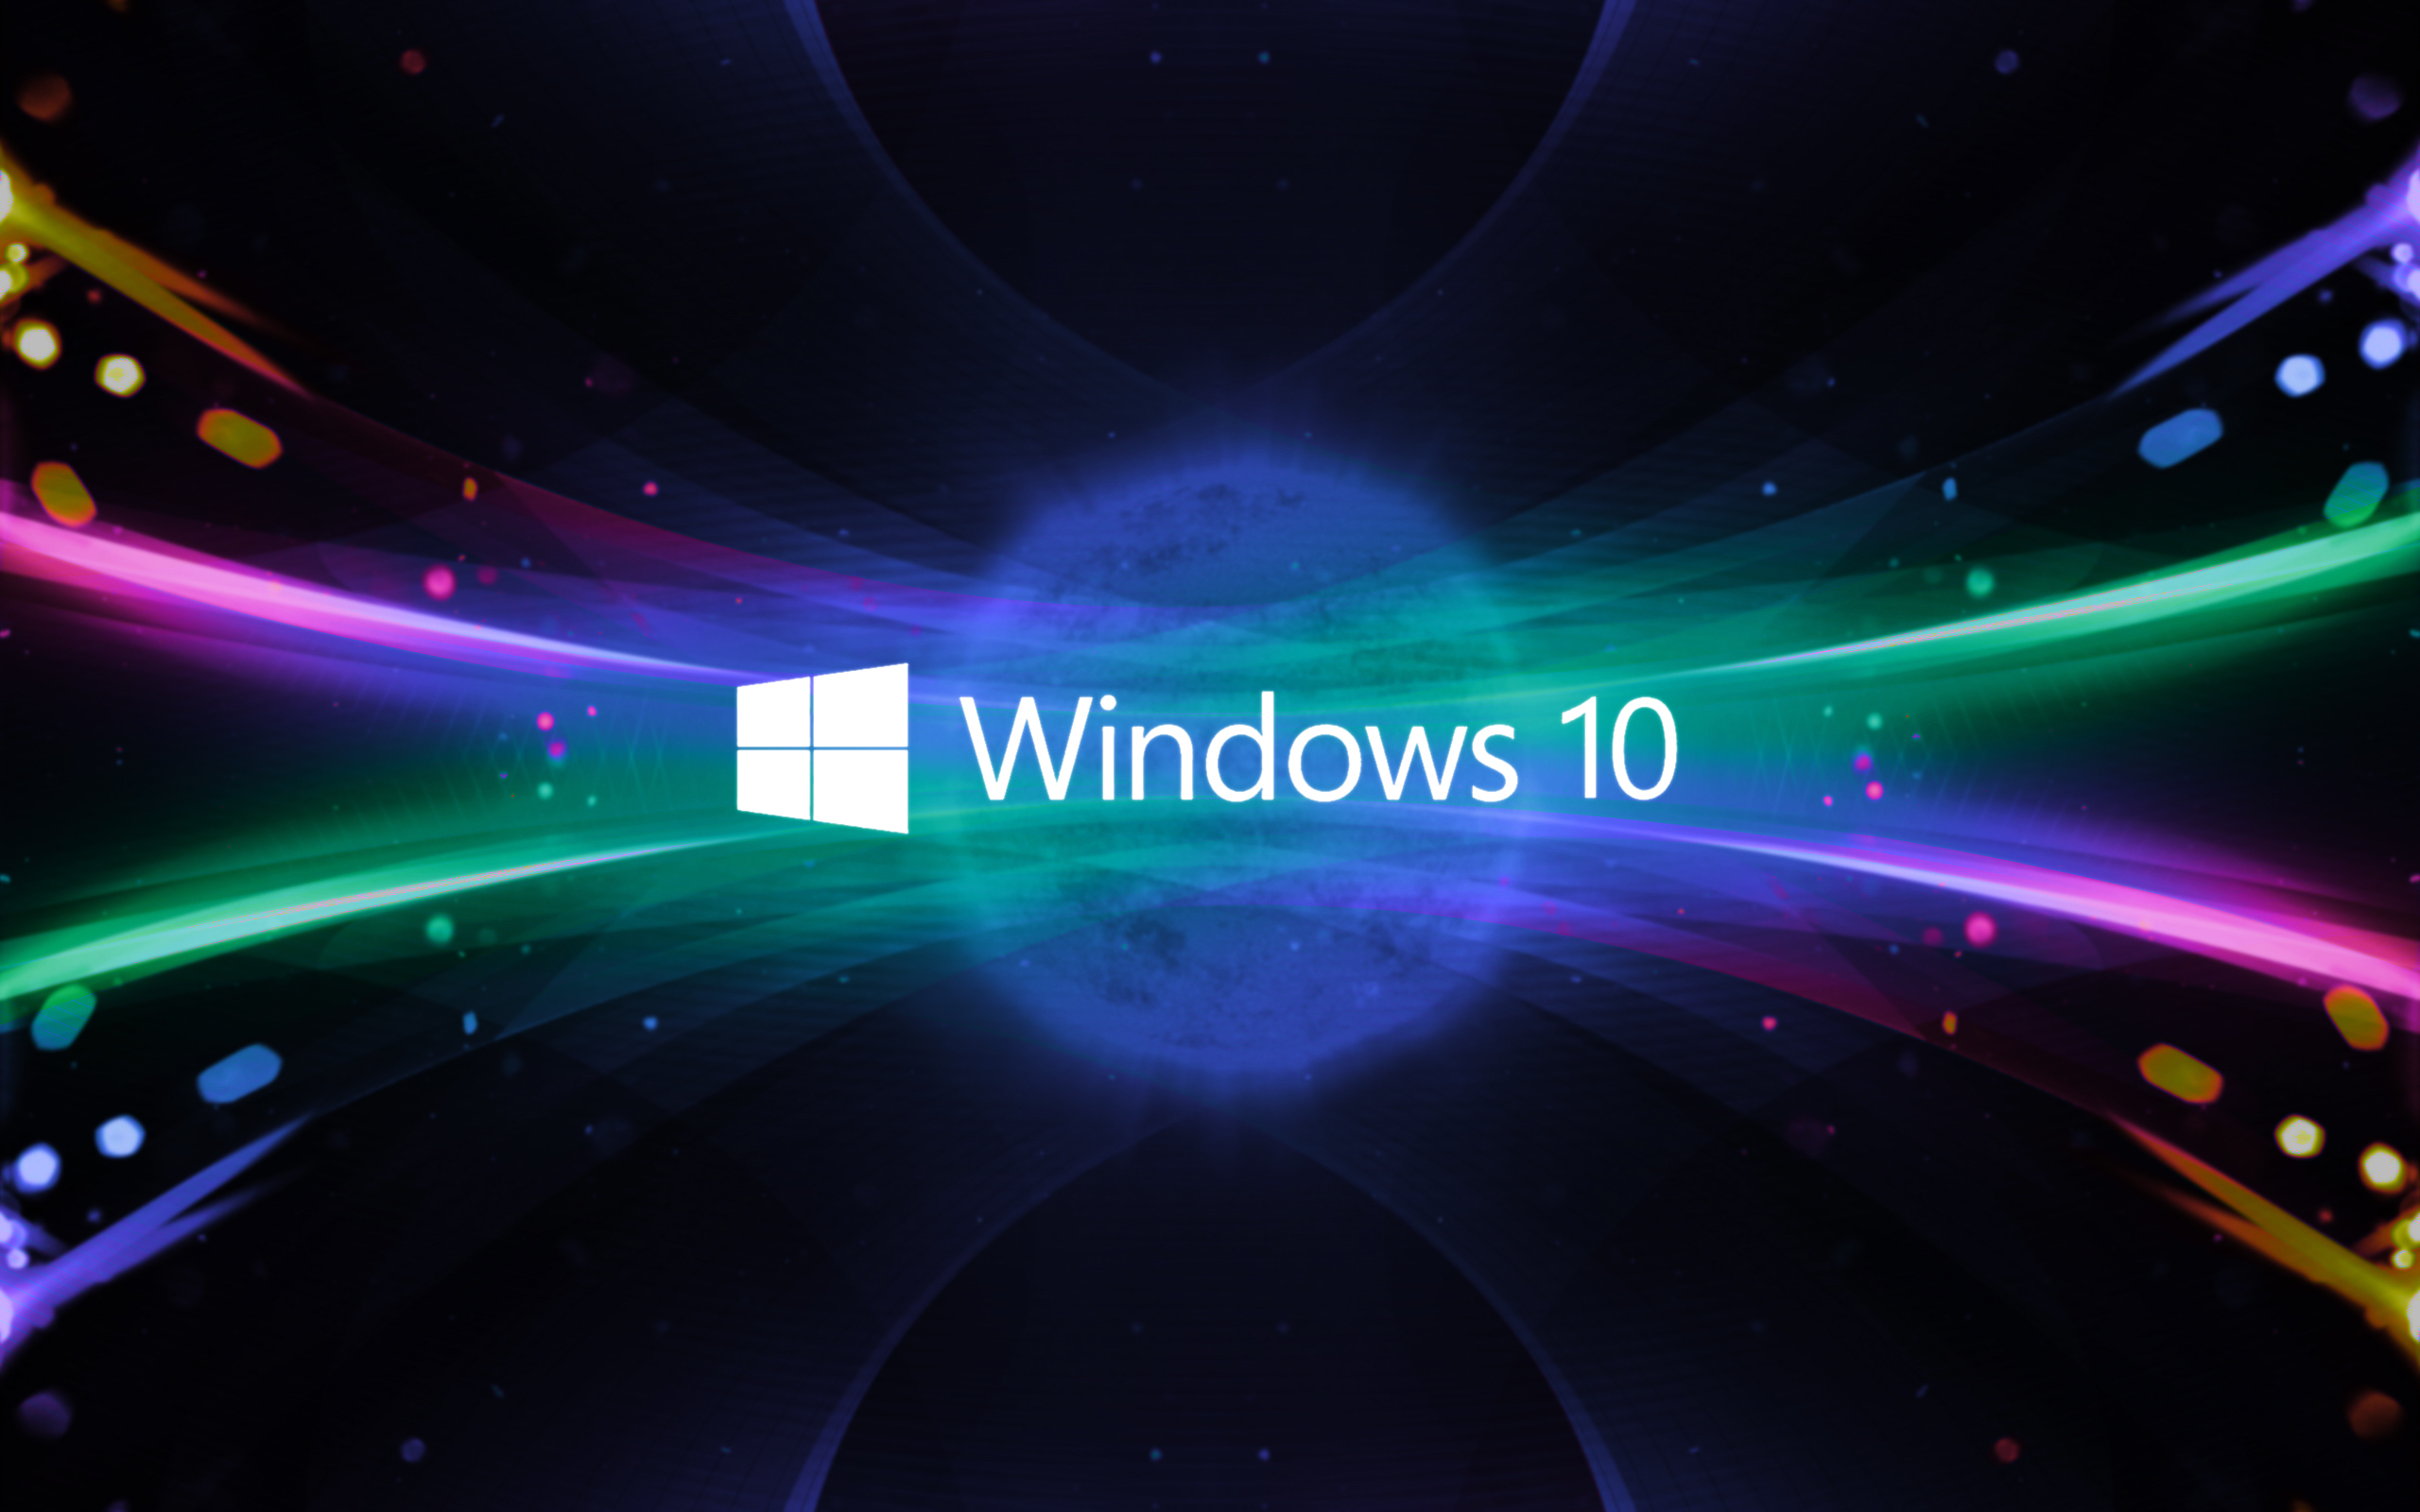 Nâng cấp Windows 10 mang đến cho bạn trải nghiệm mới mẻ và tối ưu hóa hệ thống của máy tính. Hãy xem hình ảnh để cảm nhận sự khác biệt của phiên bản mới này!